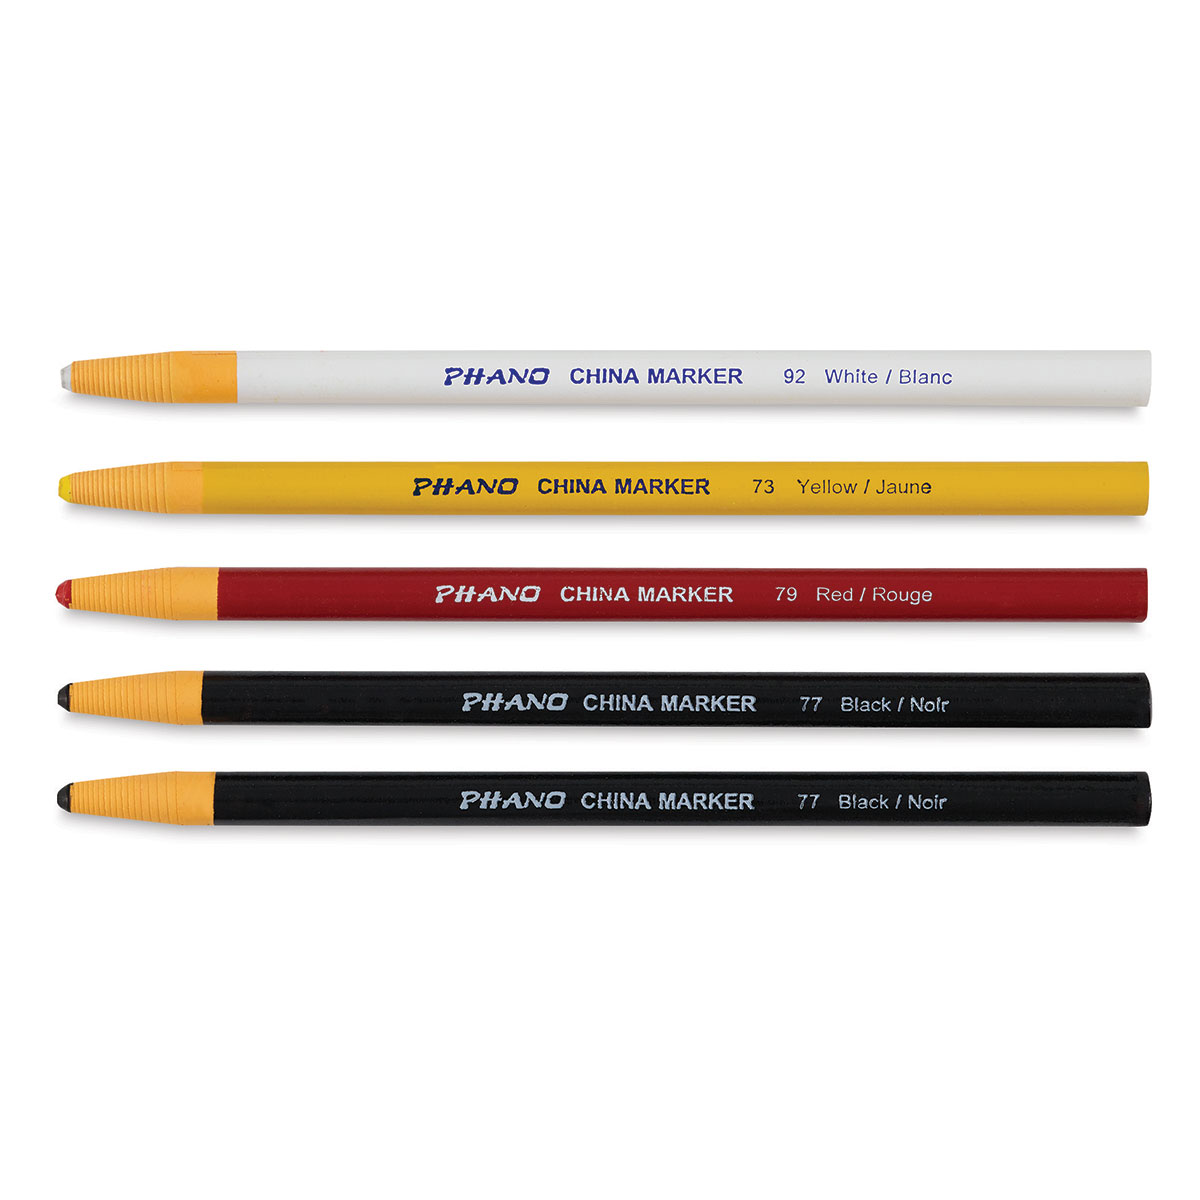 Dixon Phano China Markers, Yellow, 12 per Pack, 2 Packs